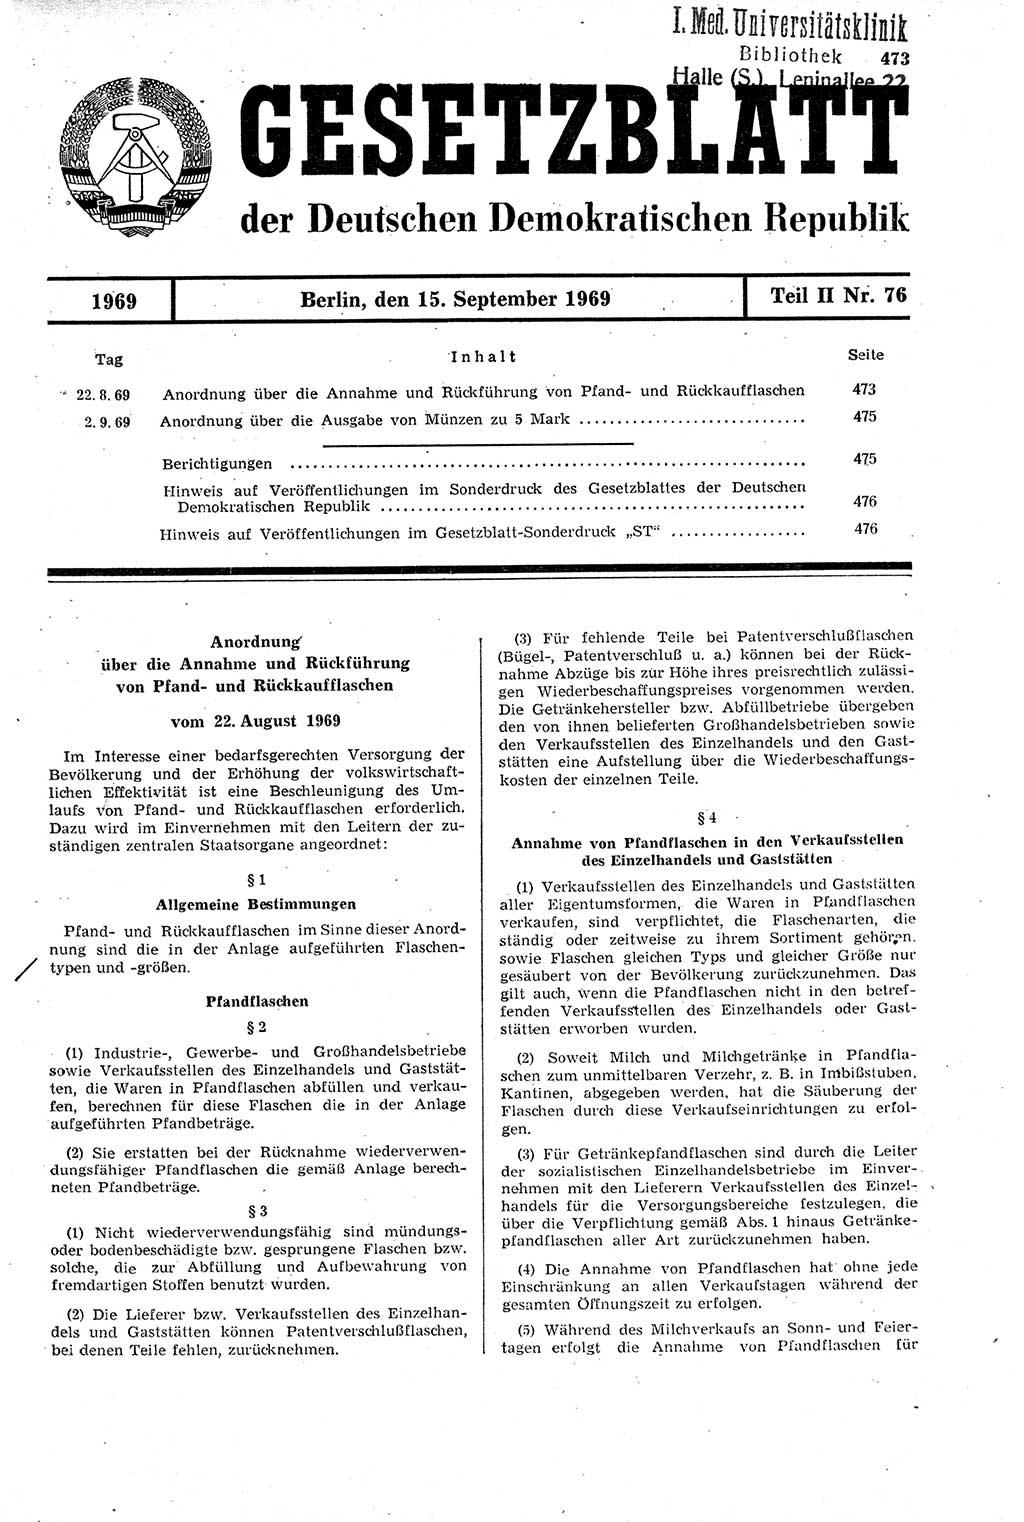 Gesetzblatt (GBl.) der Deutschen Demokratischen Republik (DDR) Teil ⅠⅠ 1969, Seite 473 (GBl. DDR ⅠⅠ 1969, S. 473)